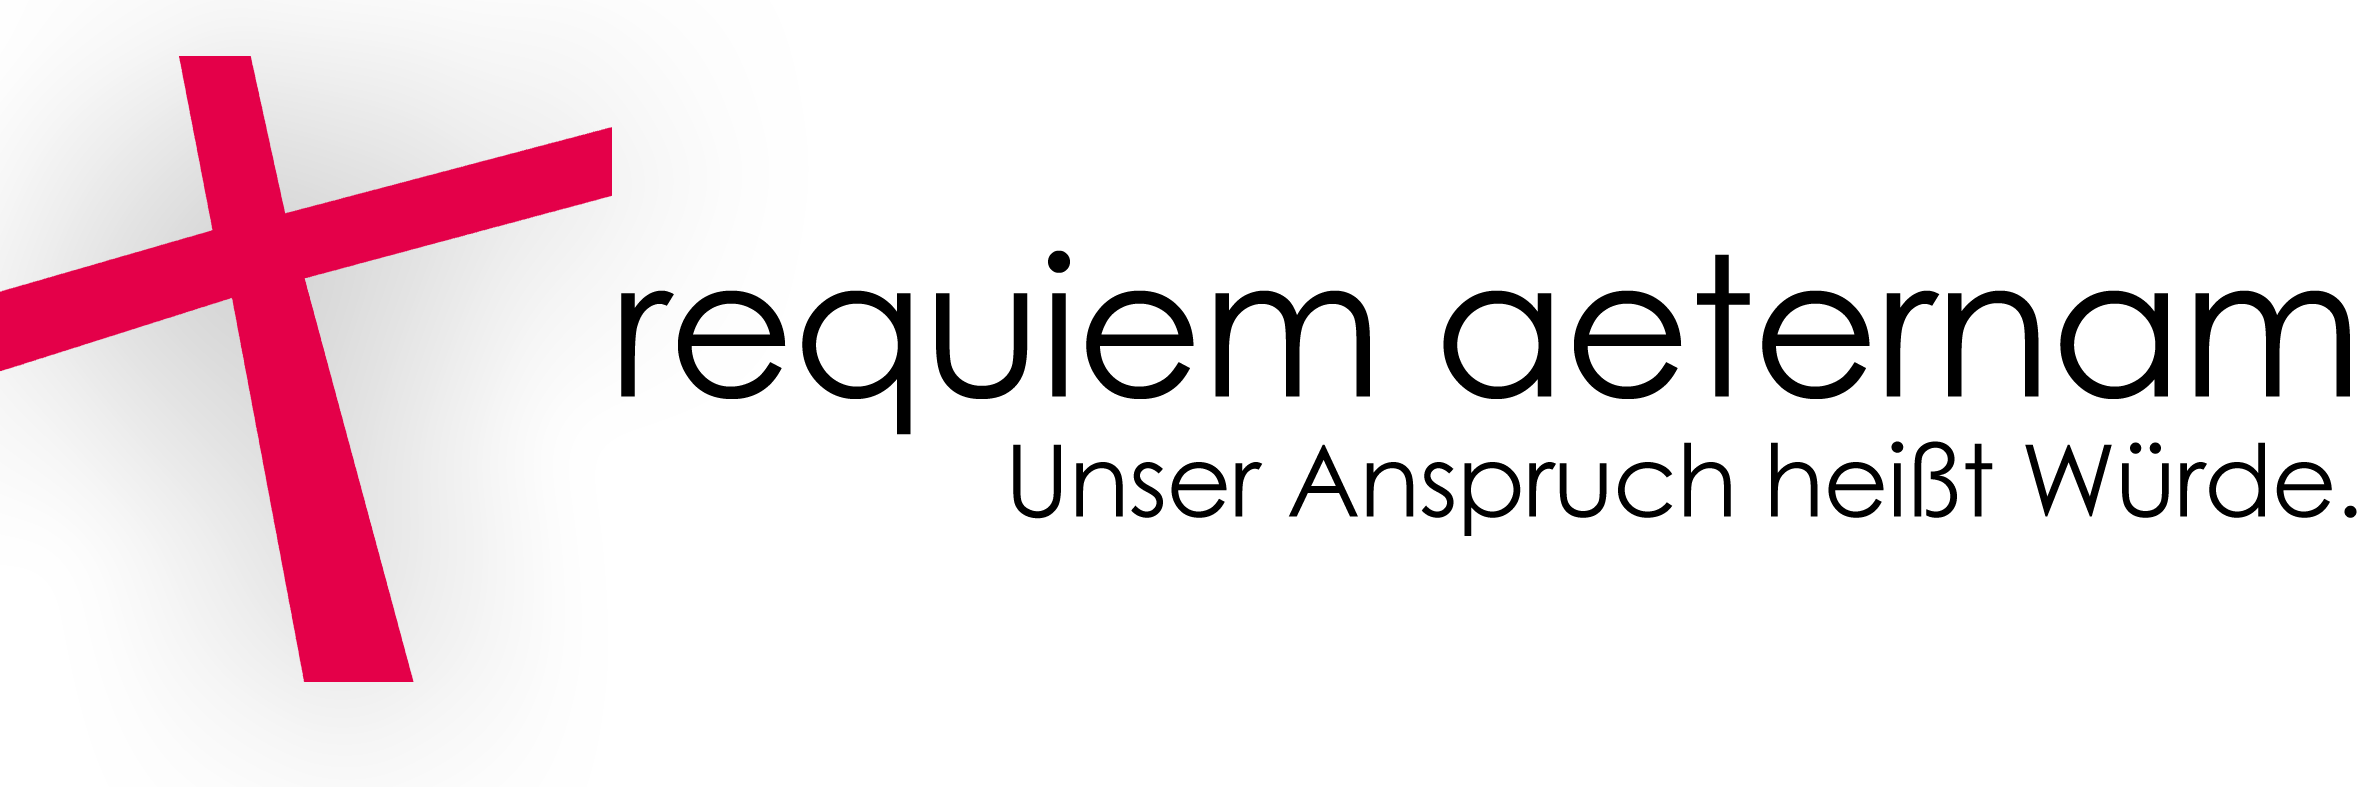 Requiem-Aeternam Logo